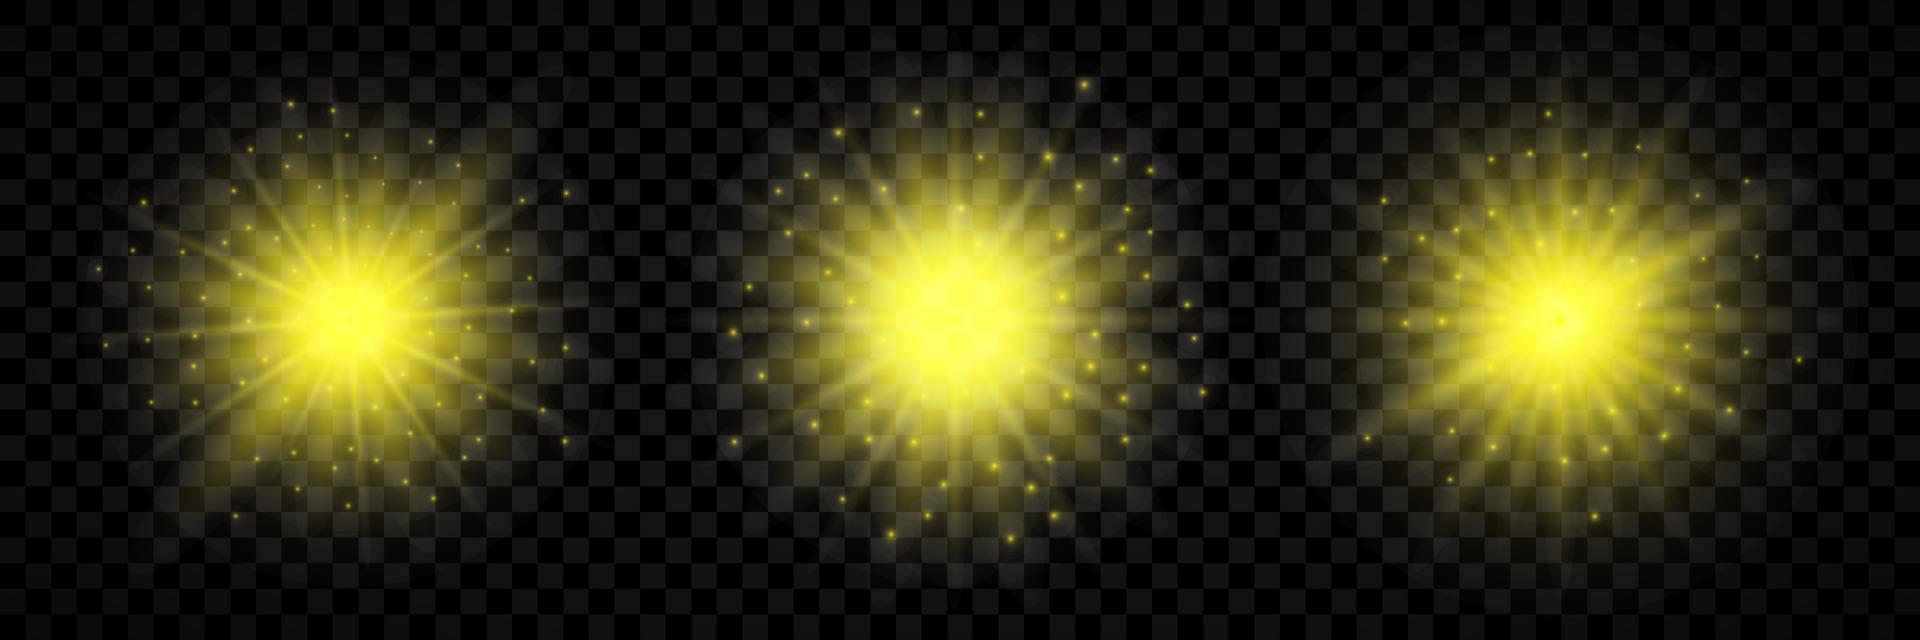 Licht bewirken von Linse Fackeln. einstellen von drei Gelb glühend Beleuchtung Starburst Auswirkungen mit funkelt vektor